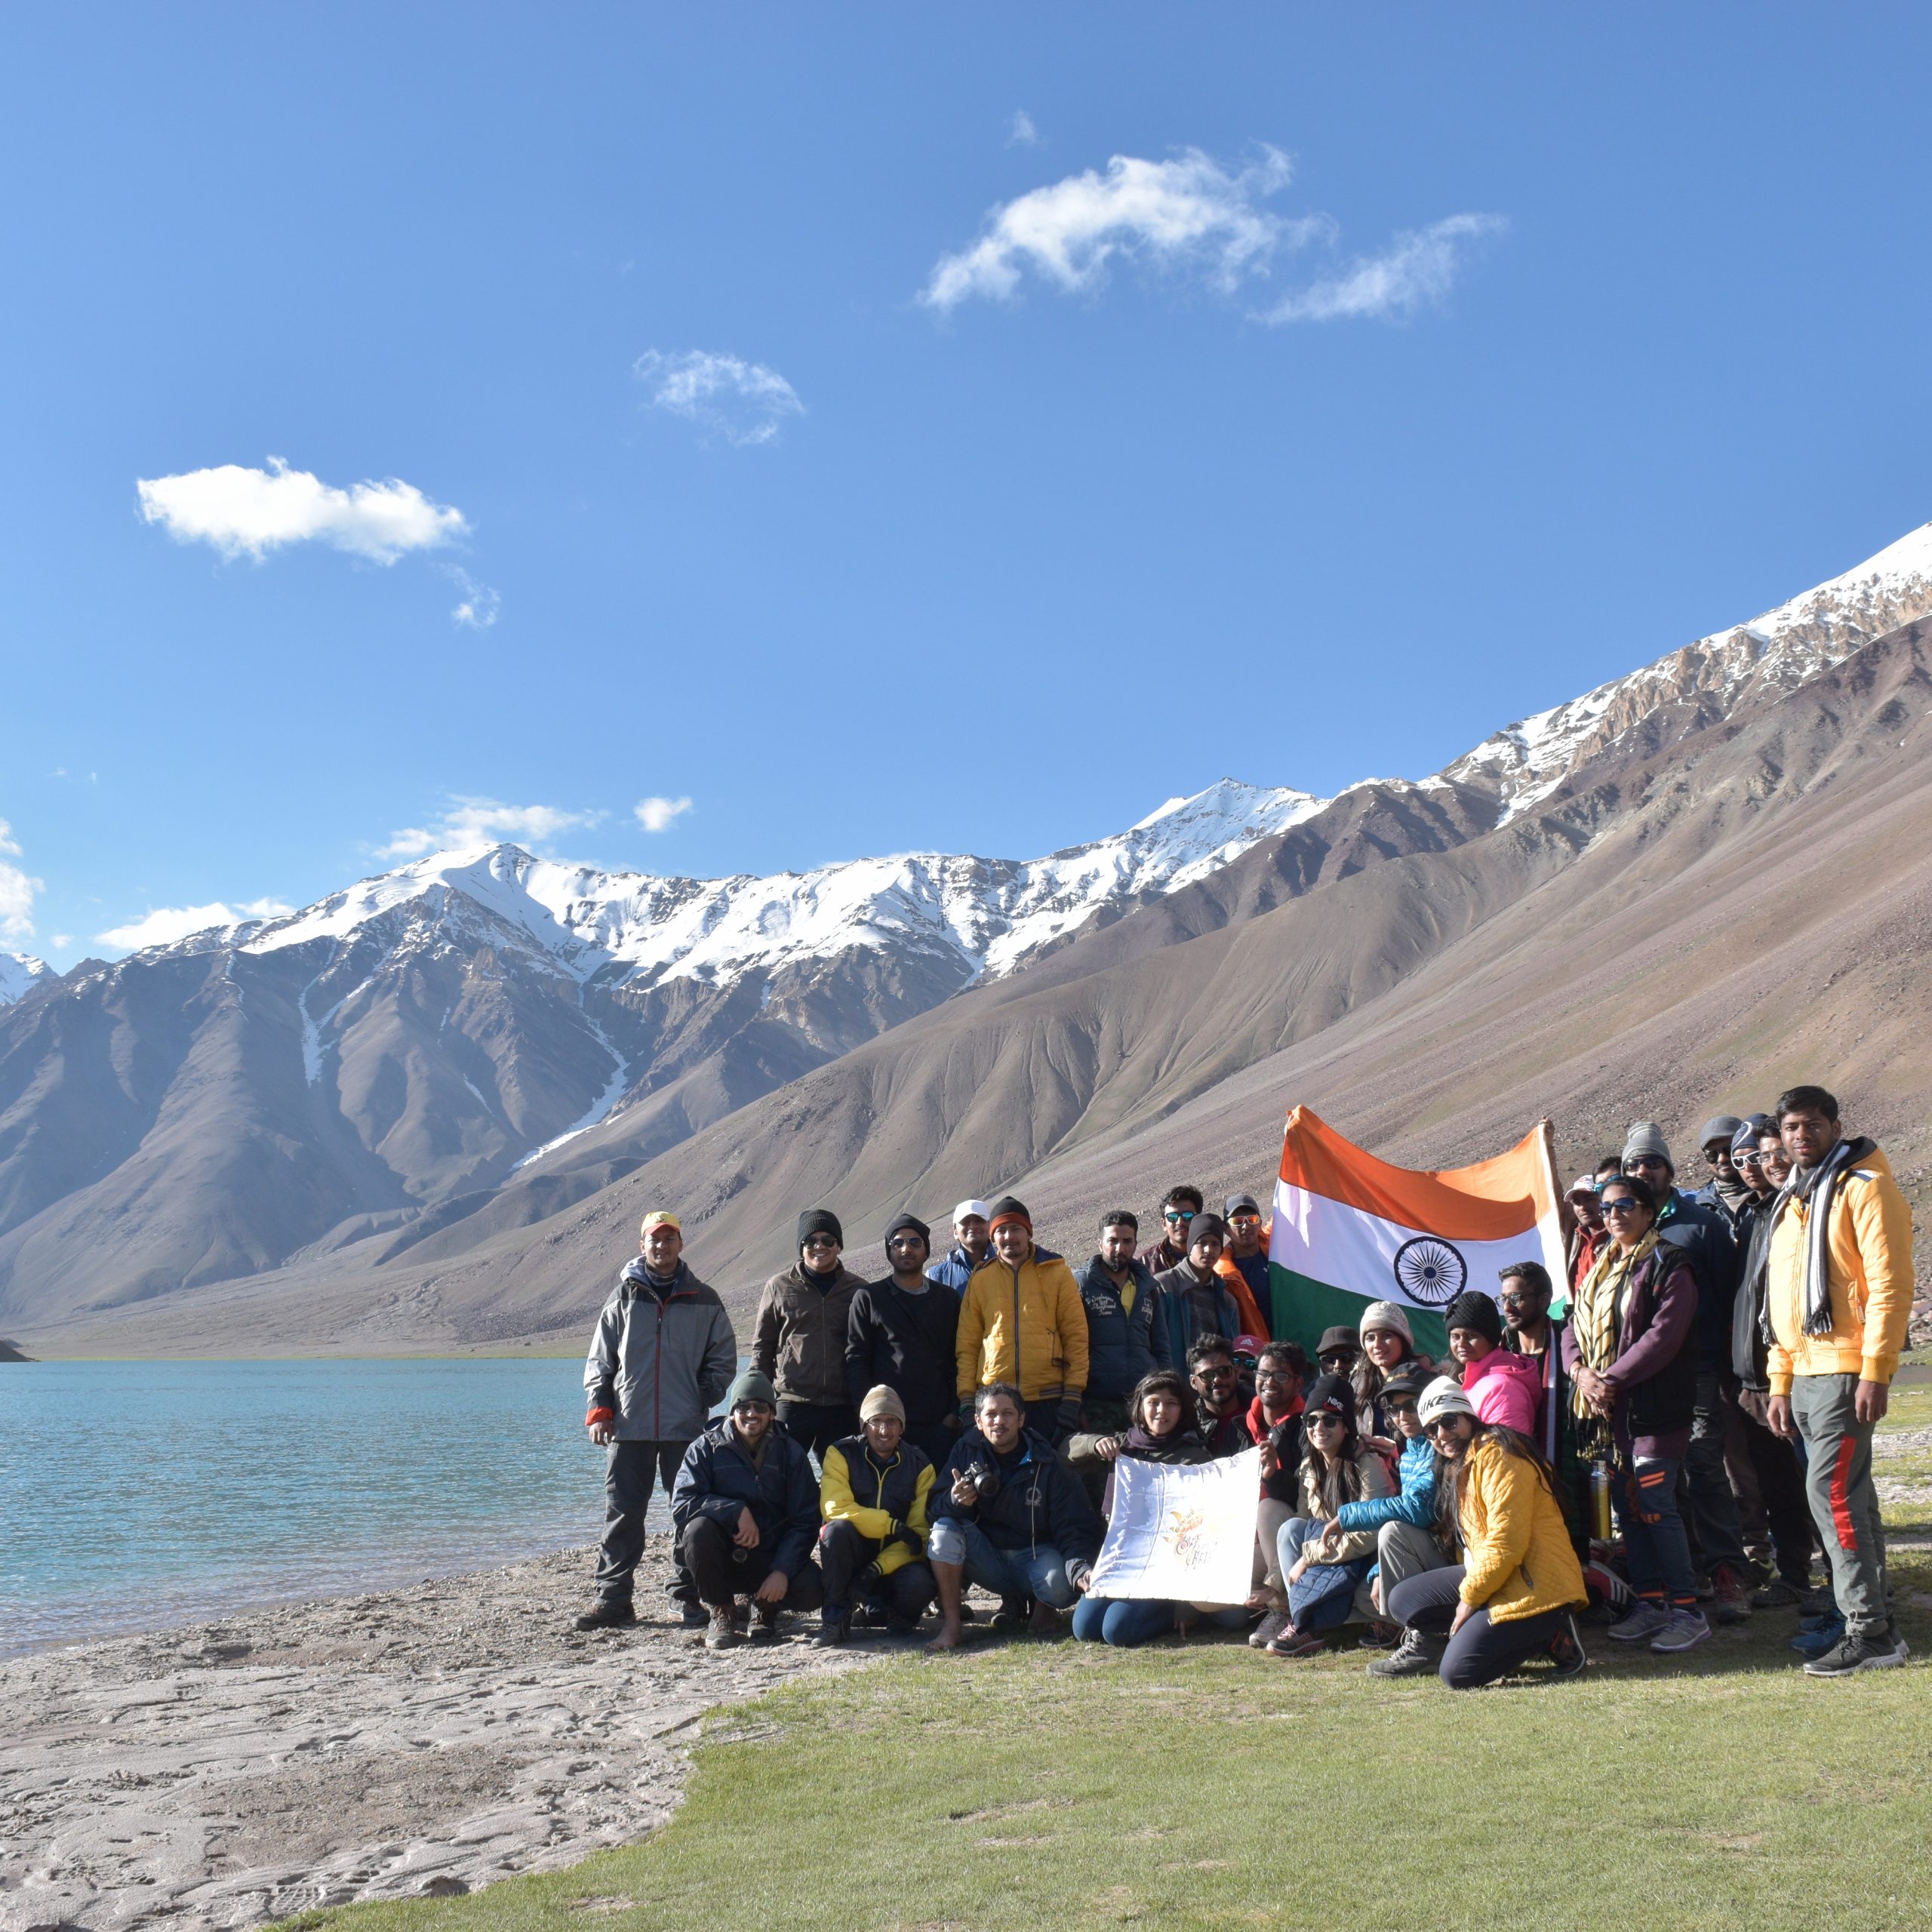 Day 6 : Trek from Kalihani Lake to Devi Ki Marhi. Trek Duration: 6 hours. Level: Moderate. Overnight at Devi Ki Marhi Campsite.